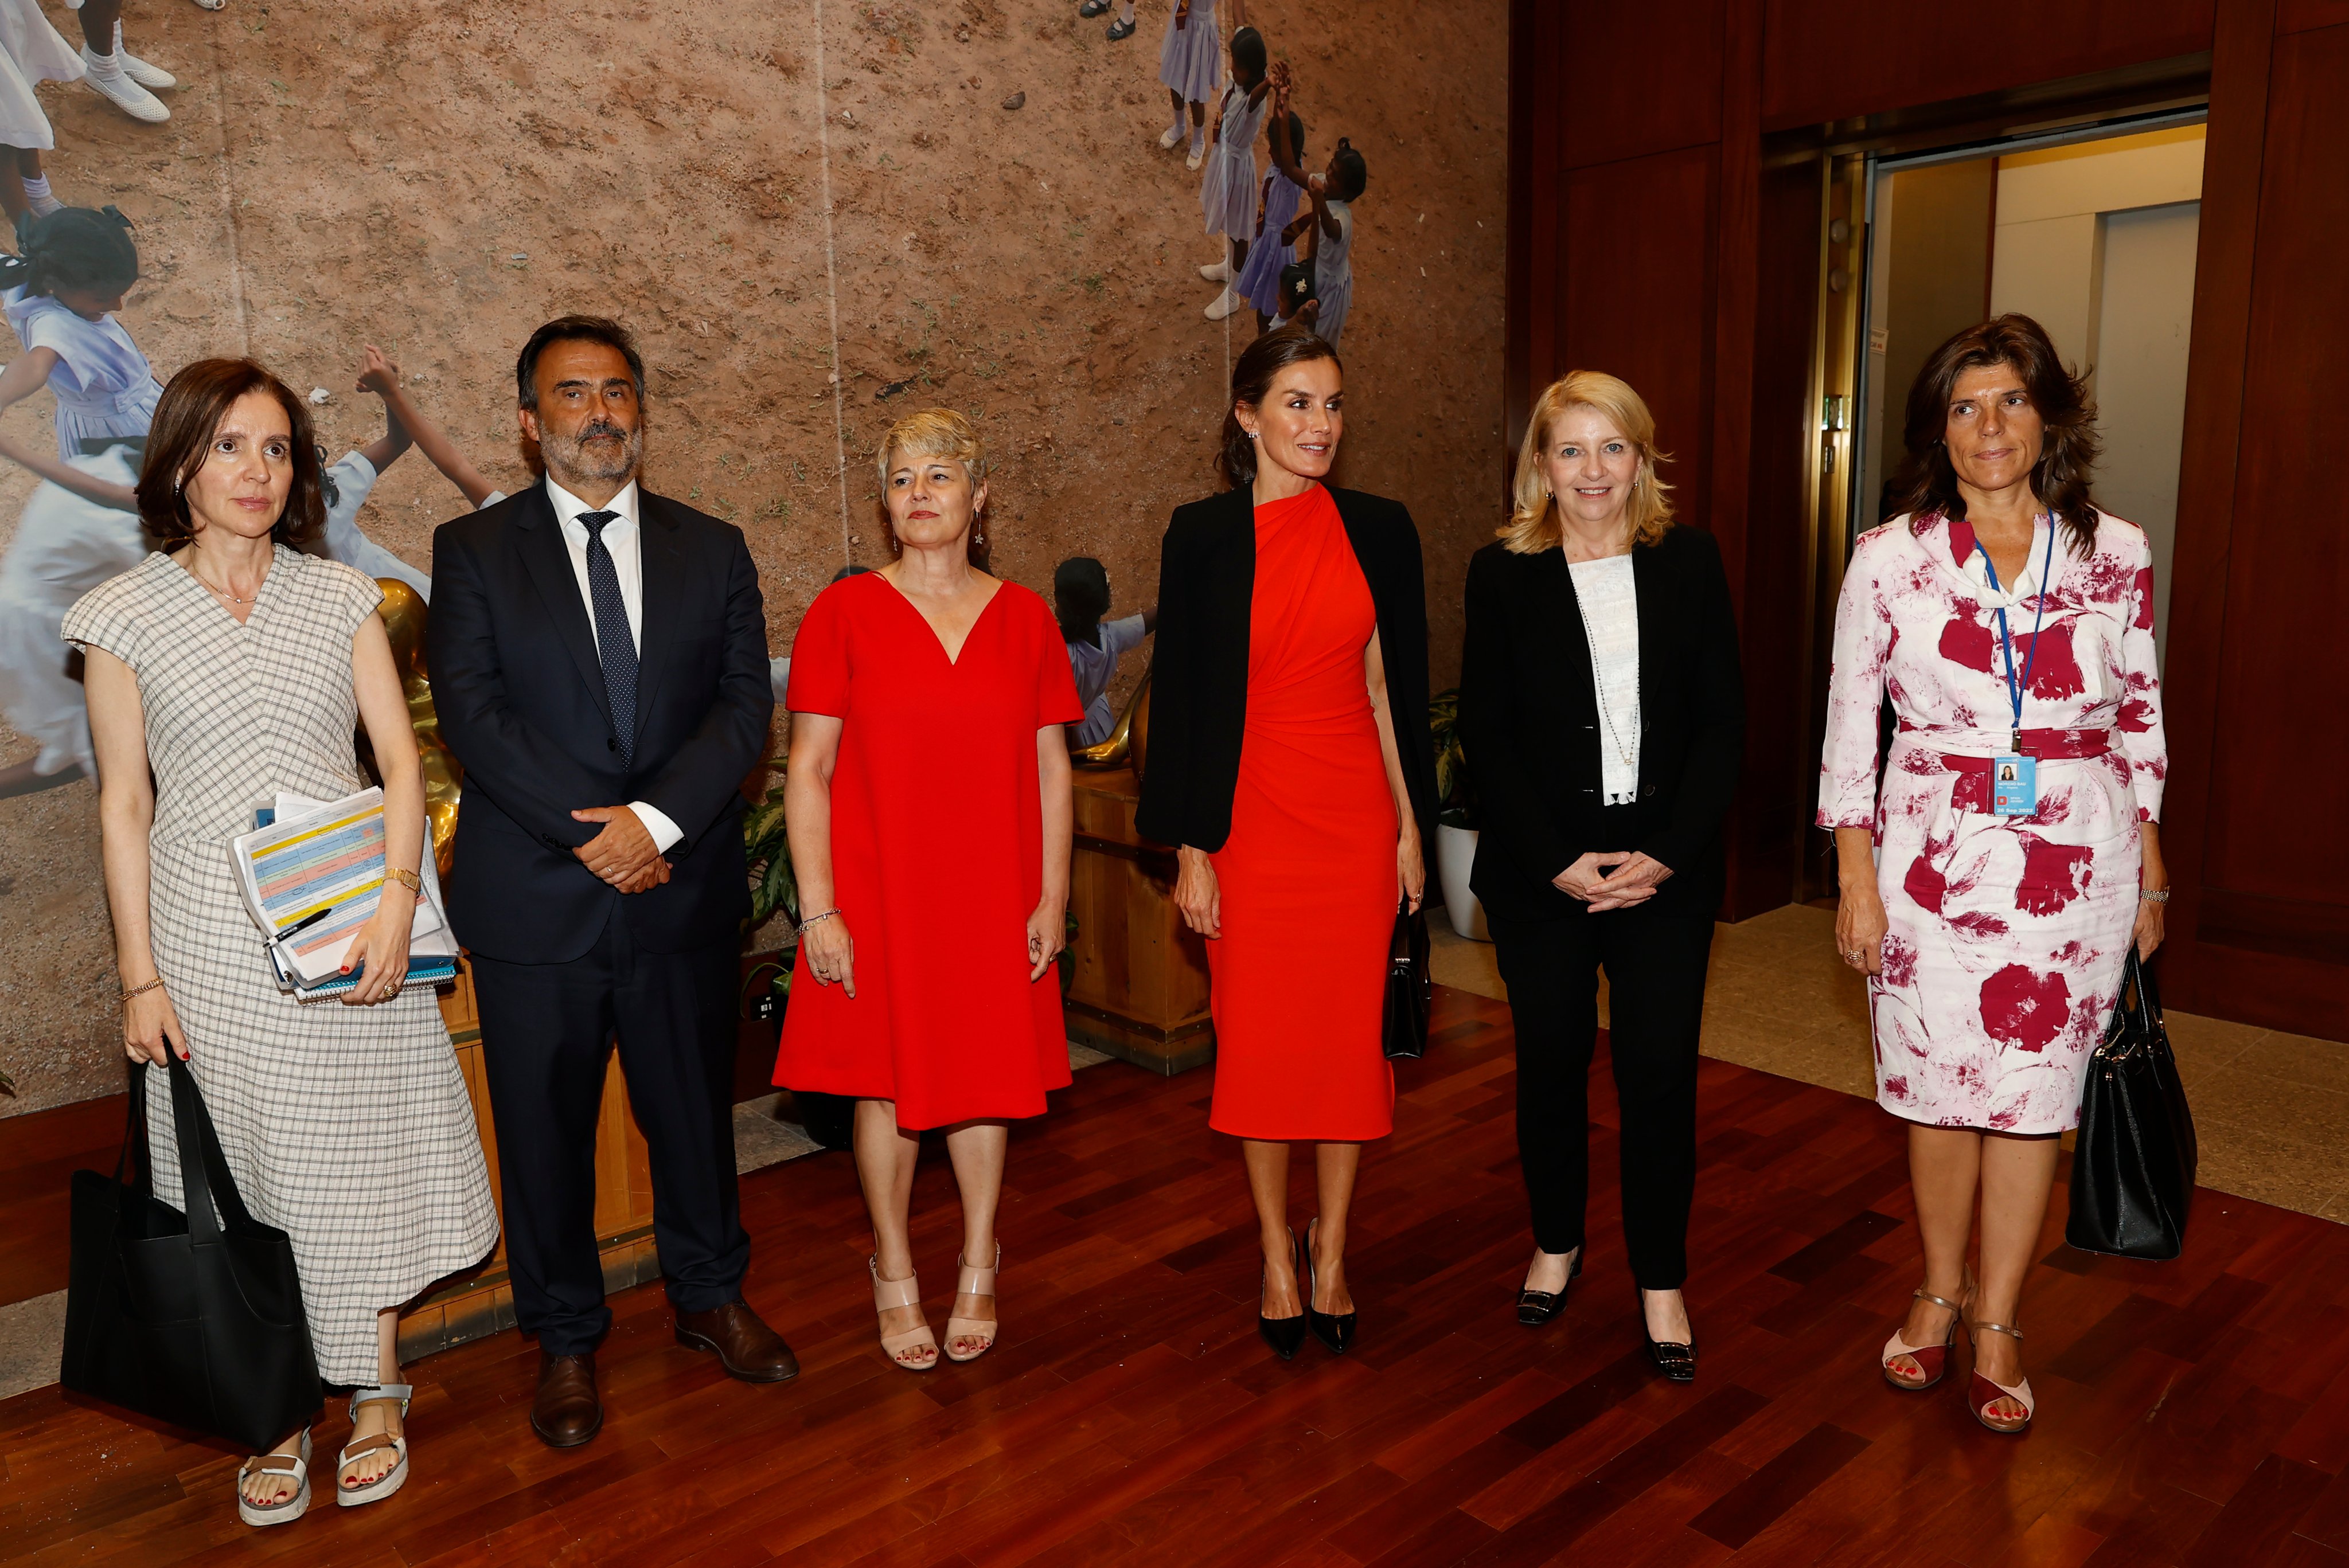 La reina Letizia elige a Narciso Rodríguez x Zara en su visita a Nueva York  | Grazia